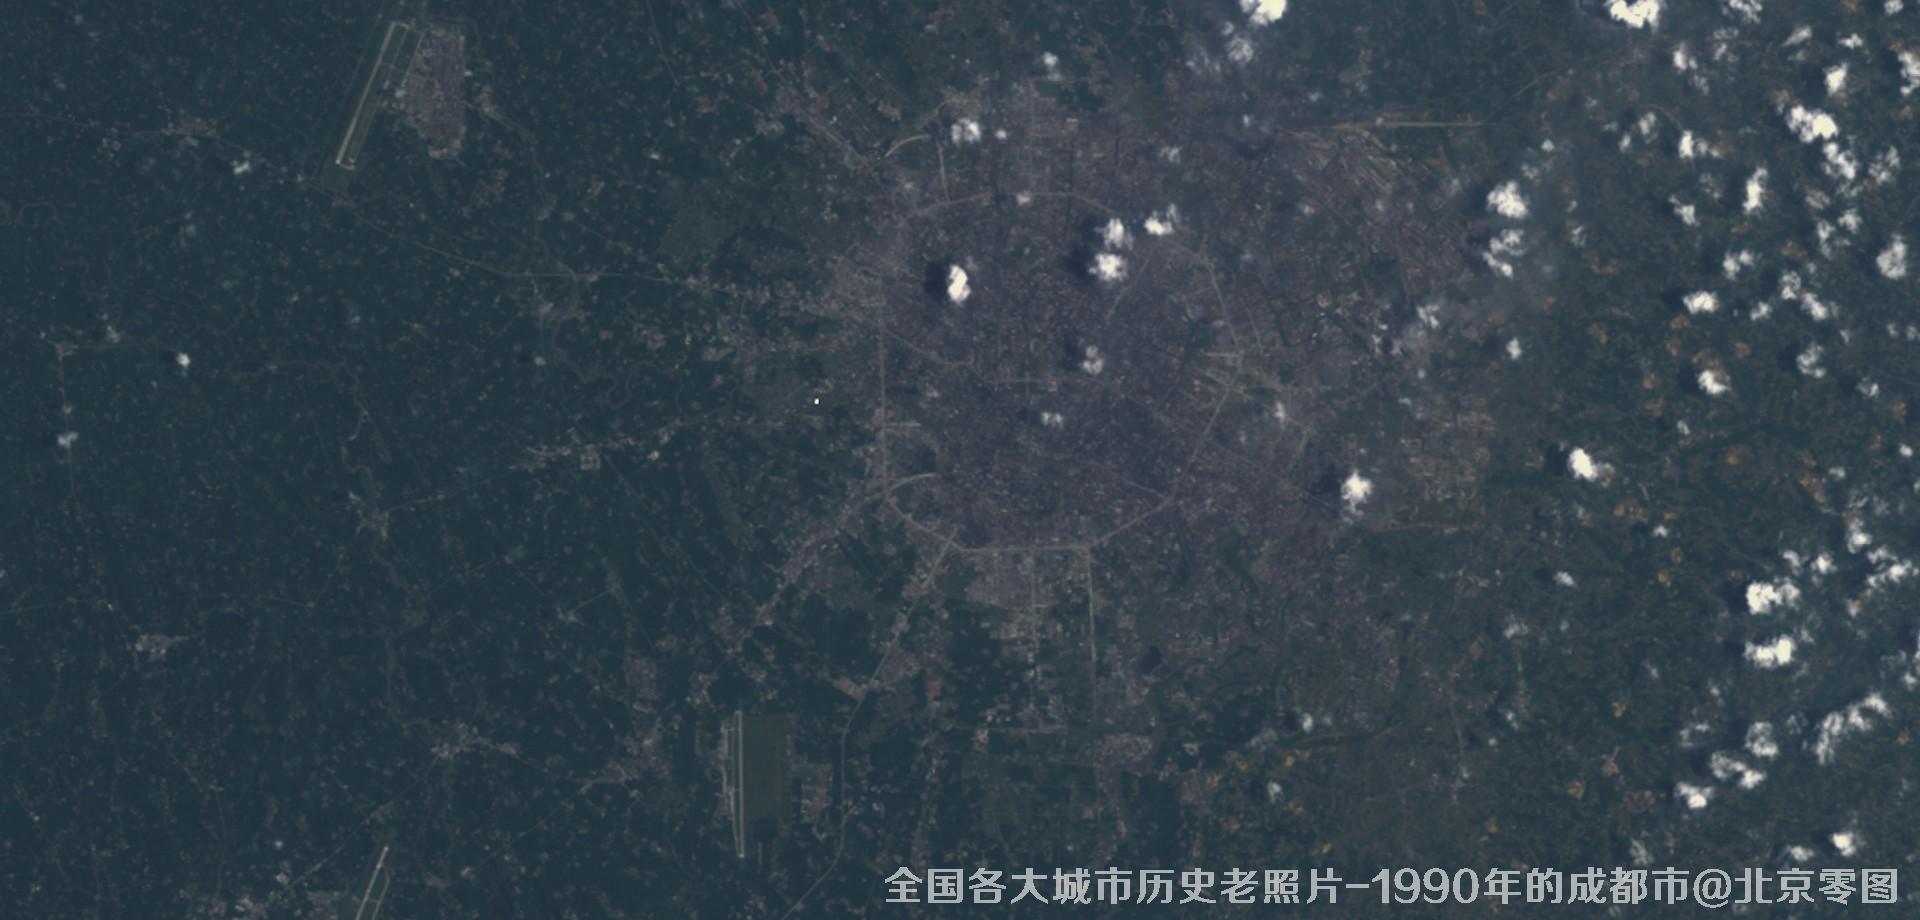 美国Landsat卫星拍摄的1990年的四川省成都市历史卫星影像图